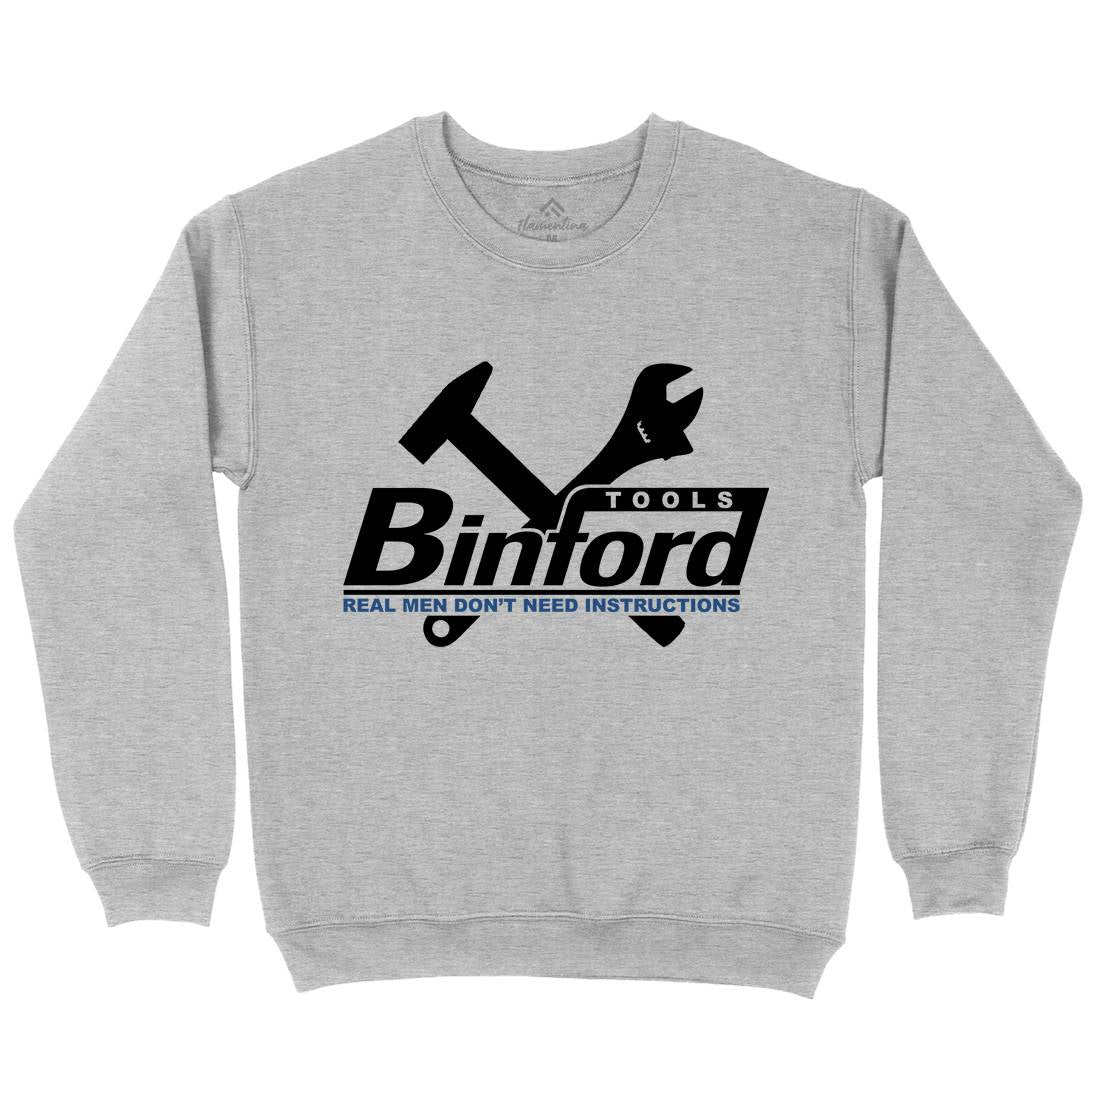 Binford Tools Kids Crew Neck Sweatshirt Work D162